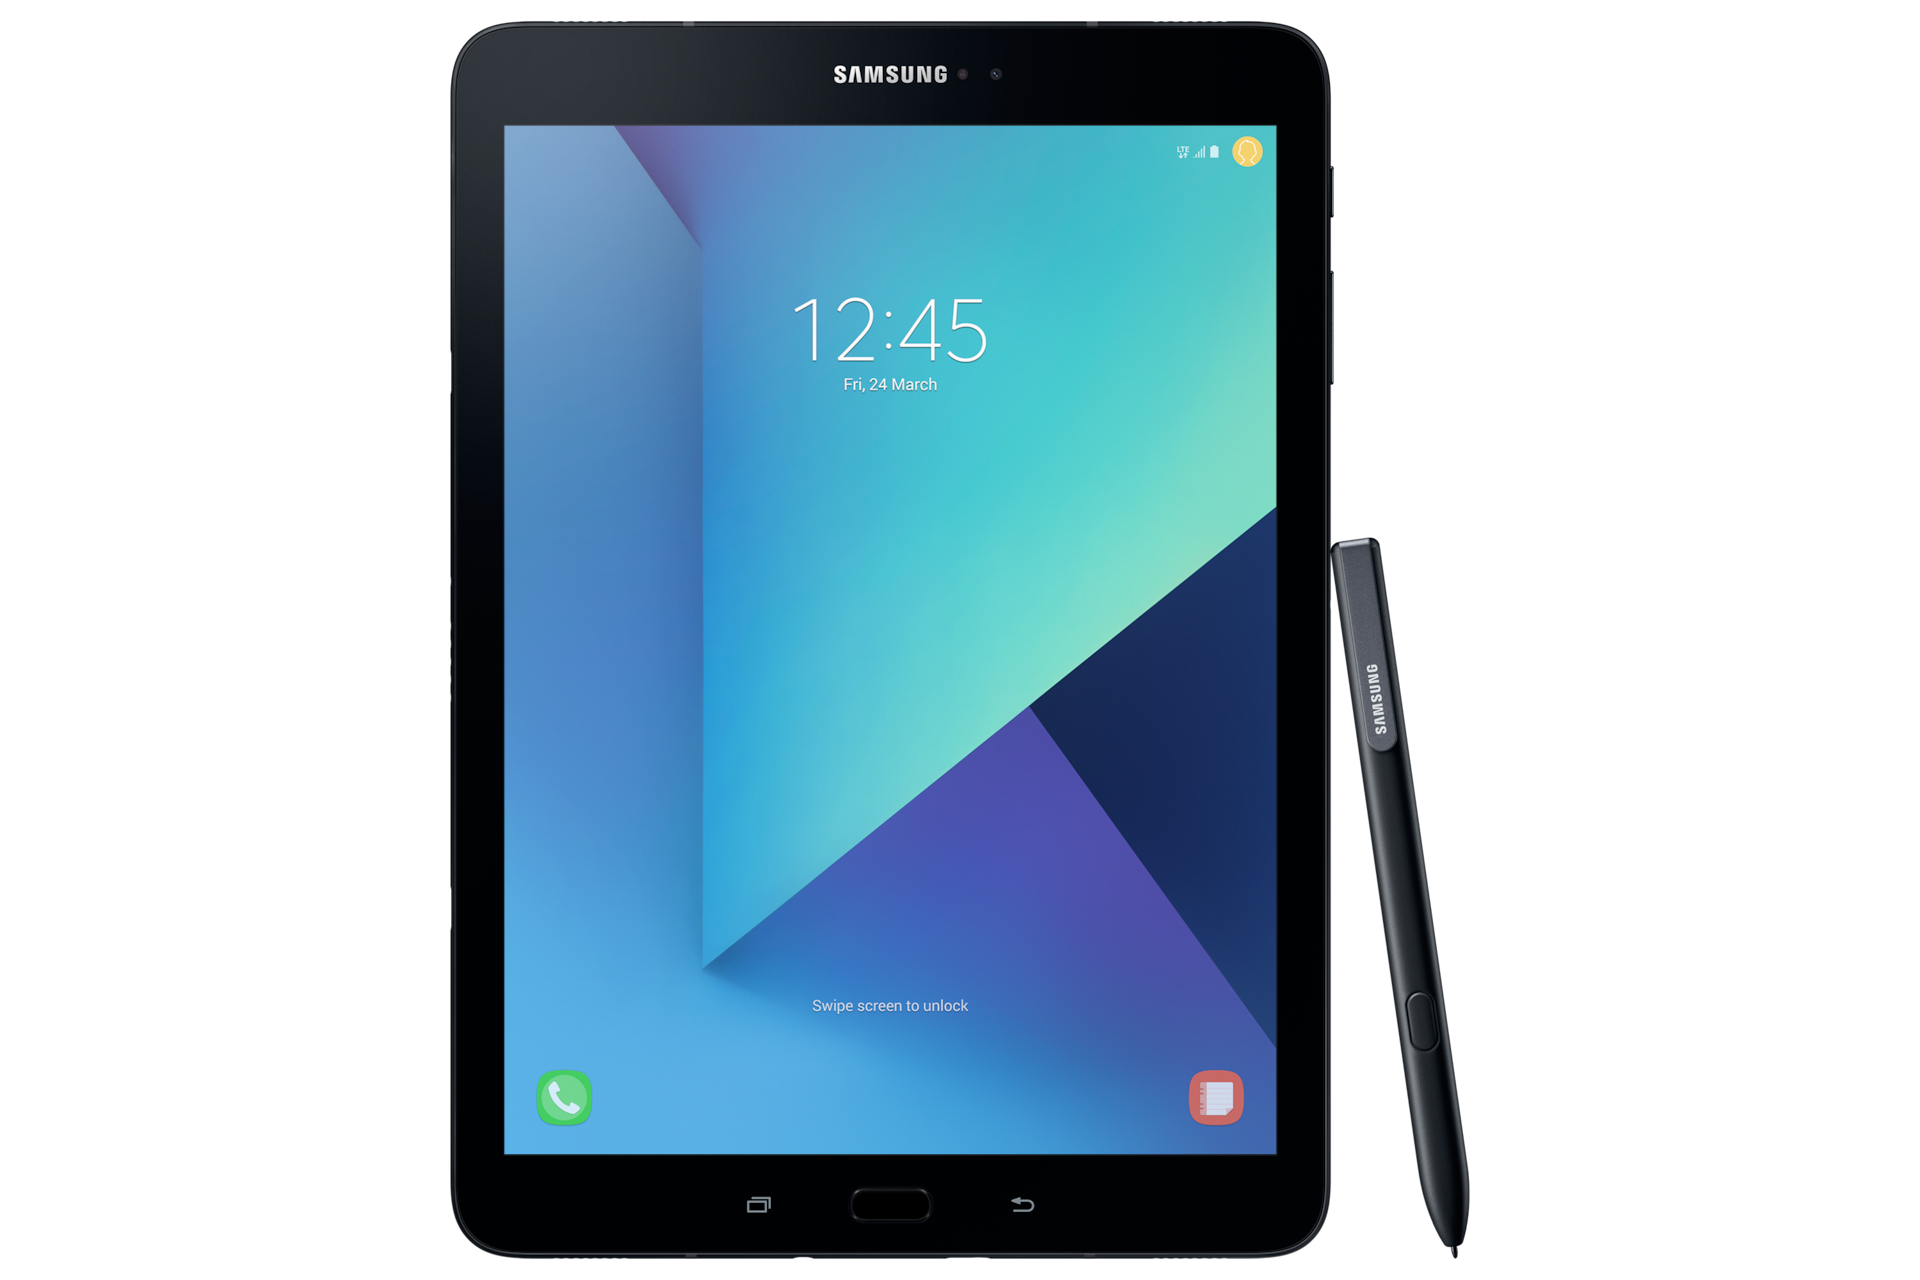 Samsung Galaxy Tab S3 4grebajas 30 De Descuento - roblox for samsung galaxy tab 3 70 2018 free download